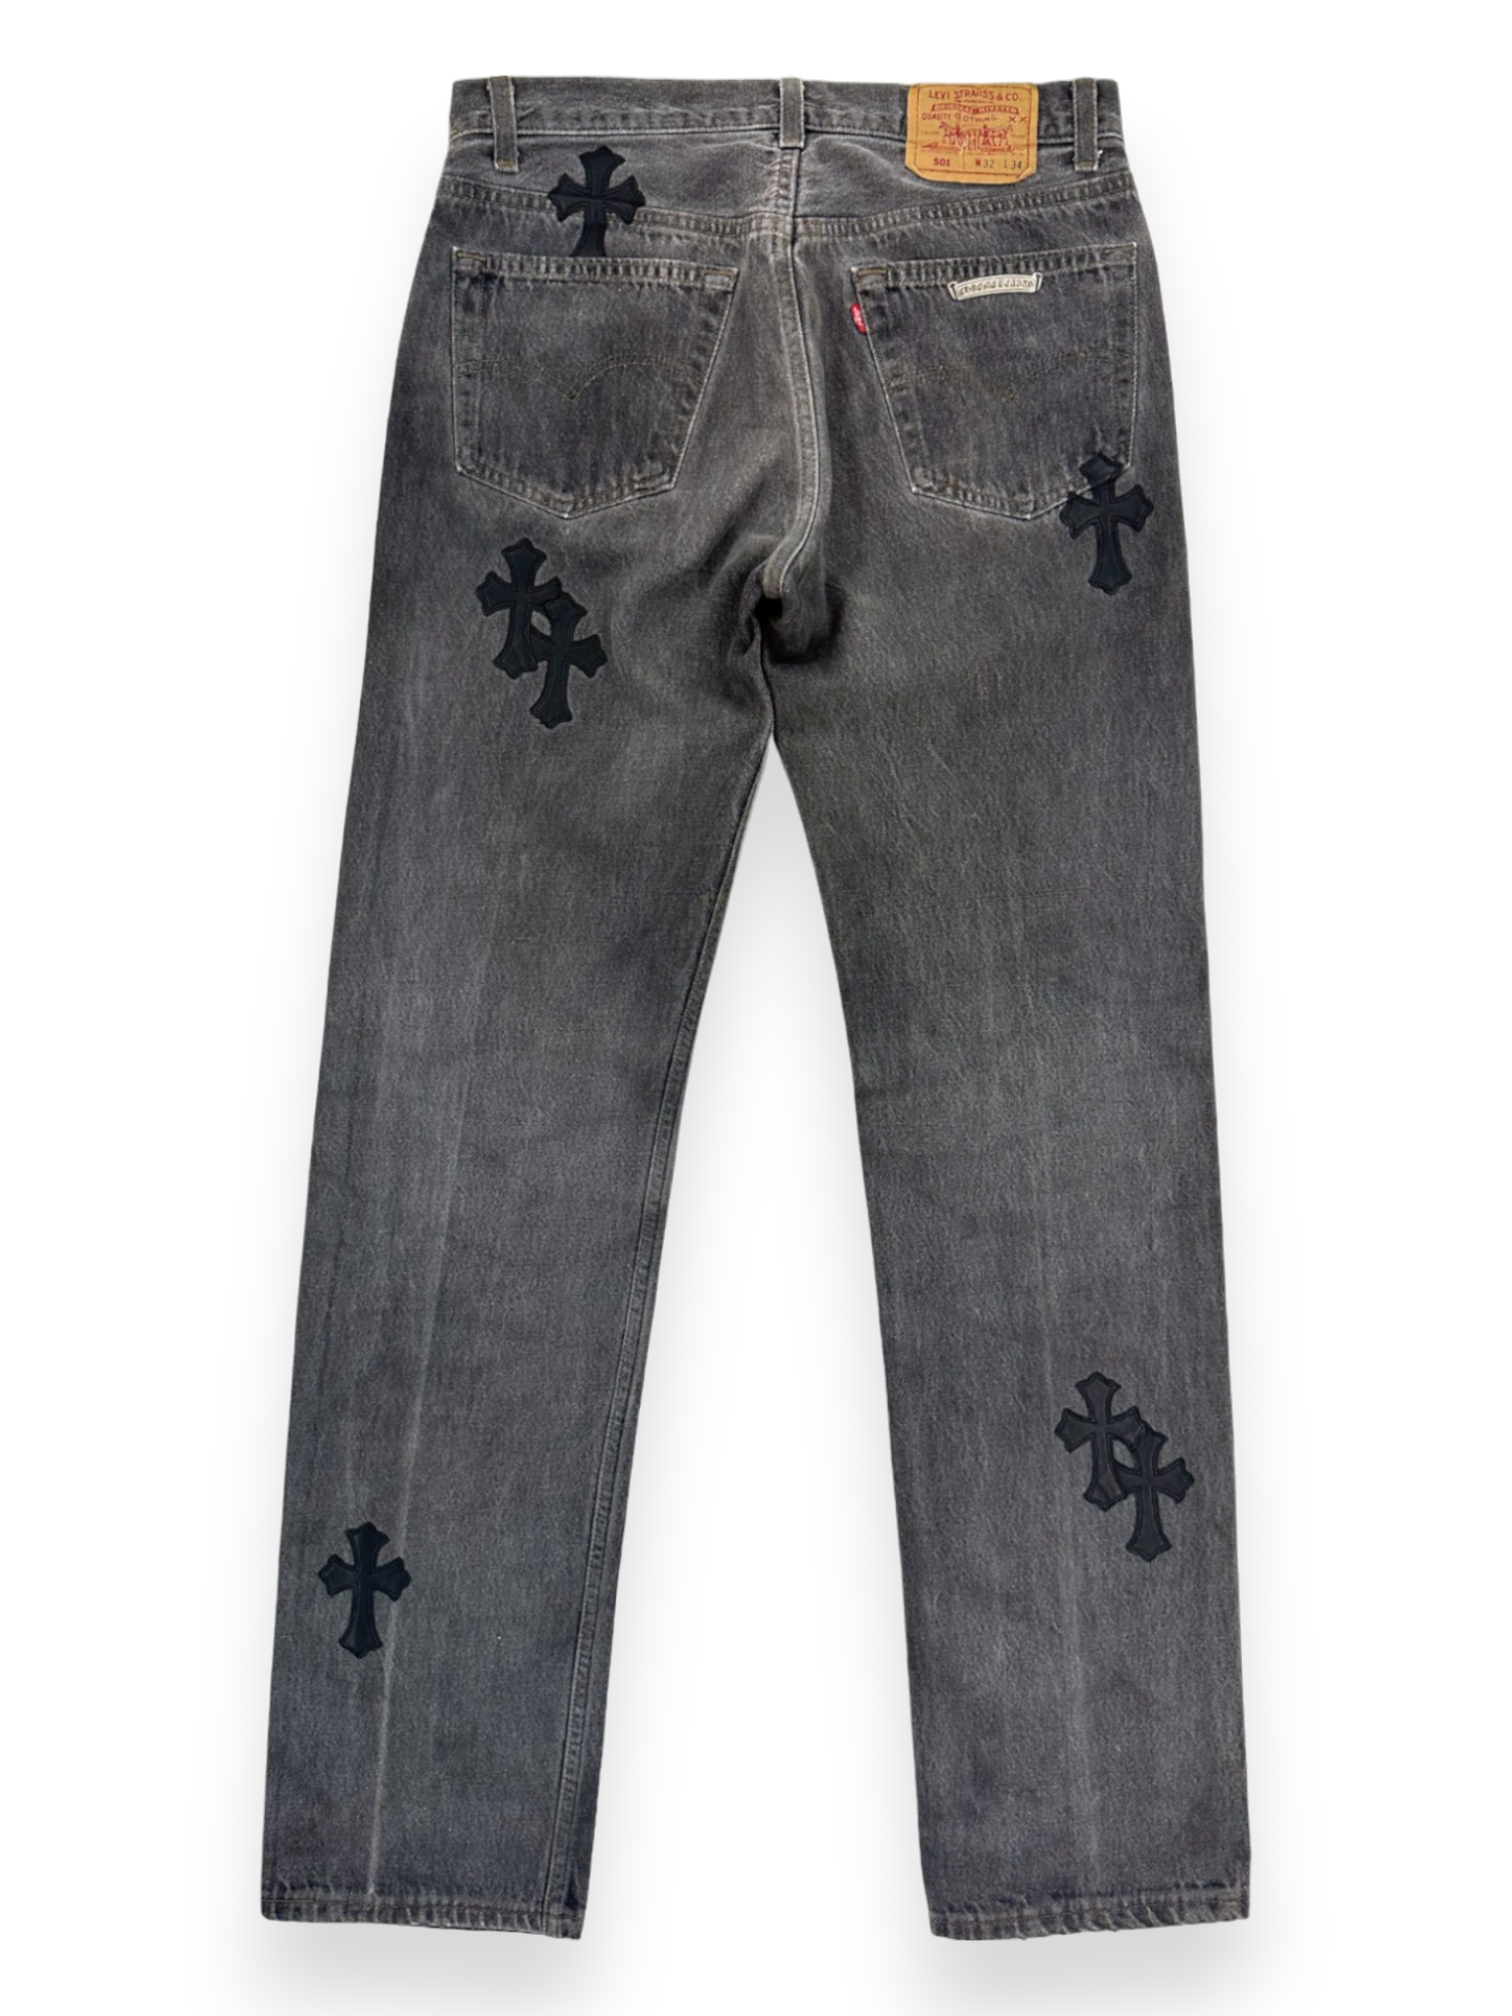 Chrome Hearts Cross Patch Levi’s Black Denim Jeans